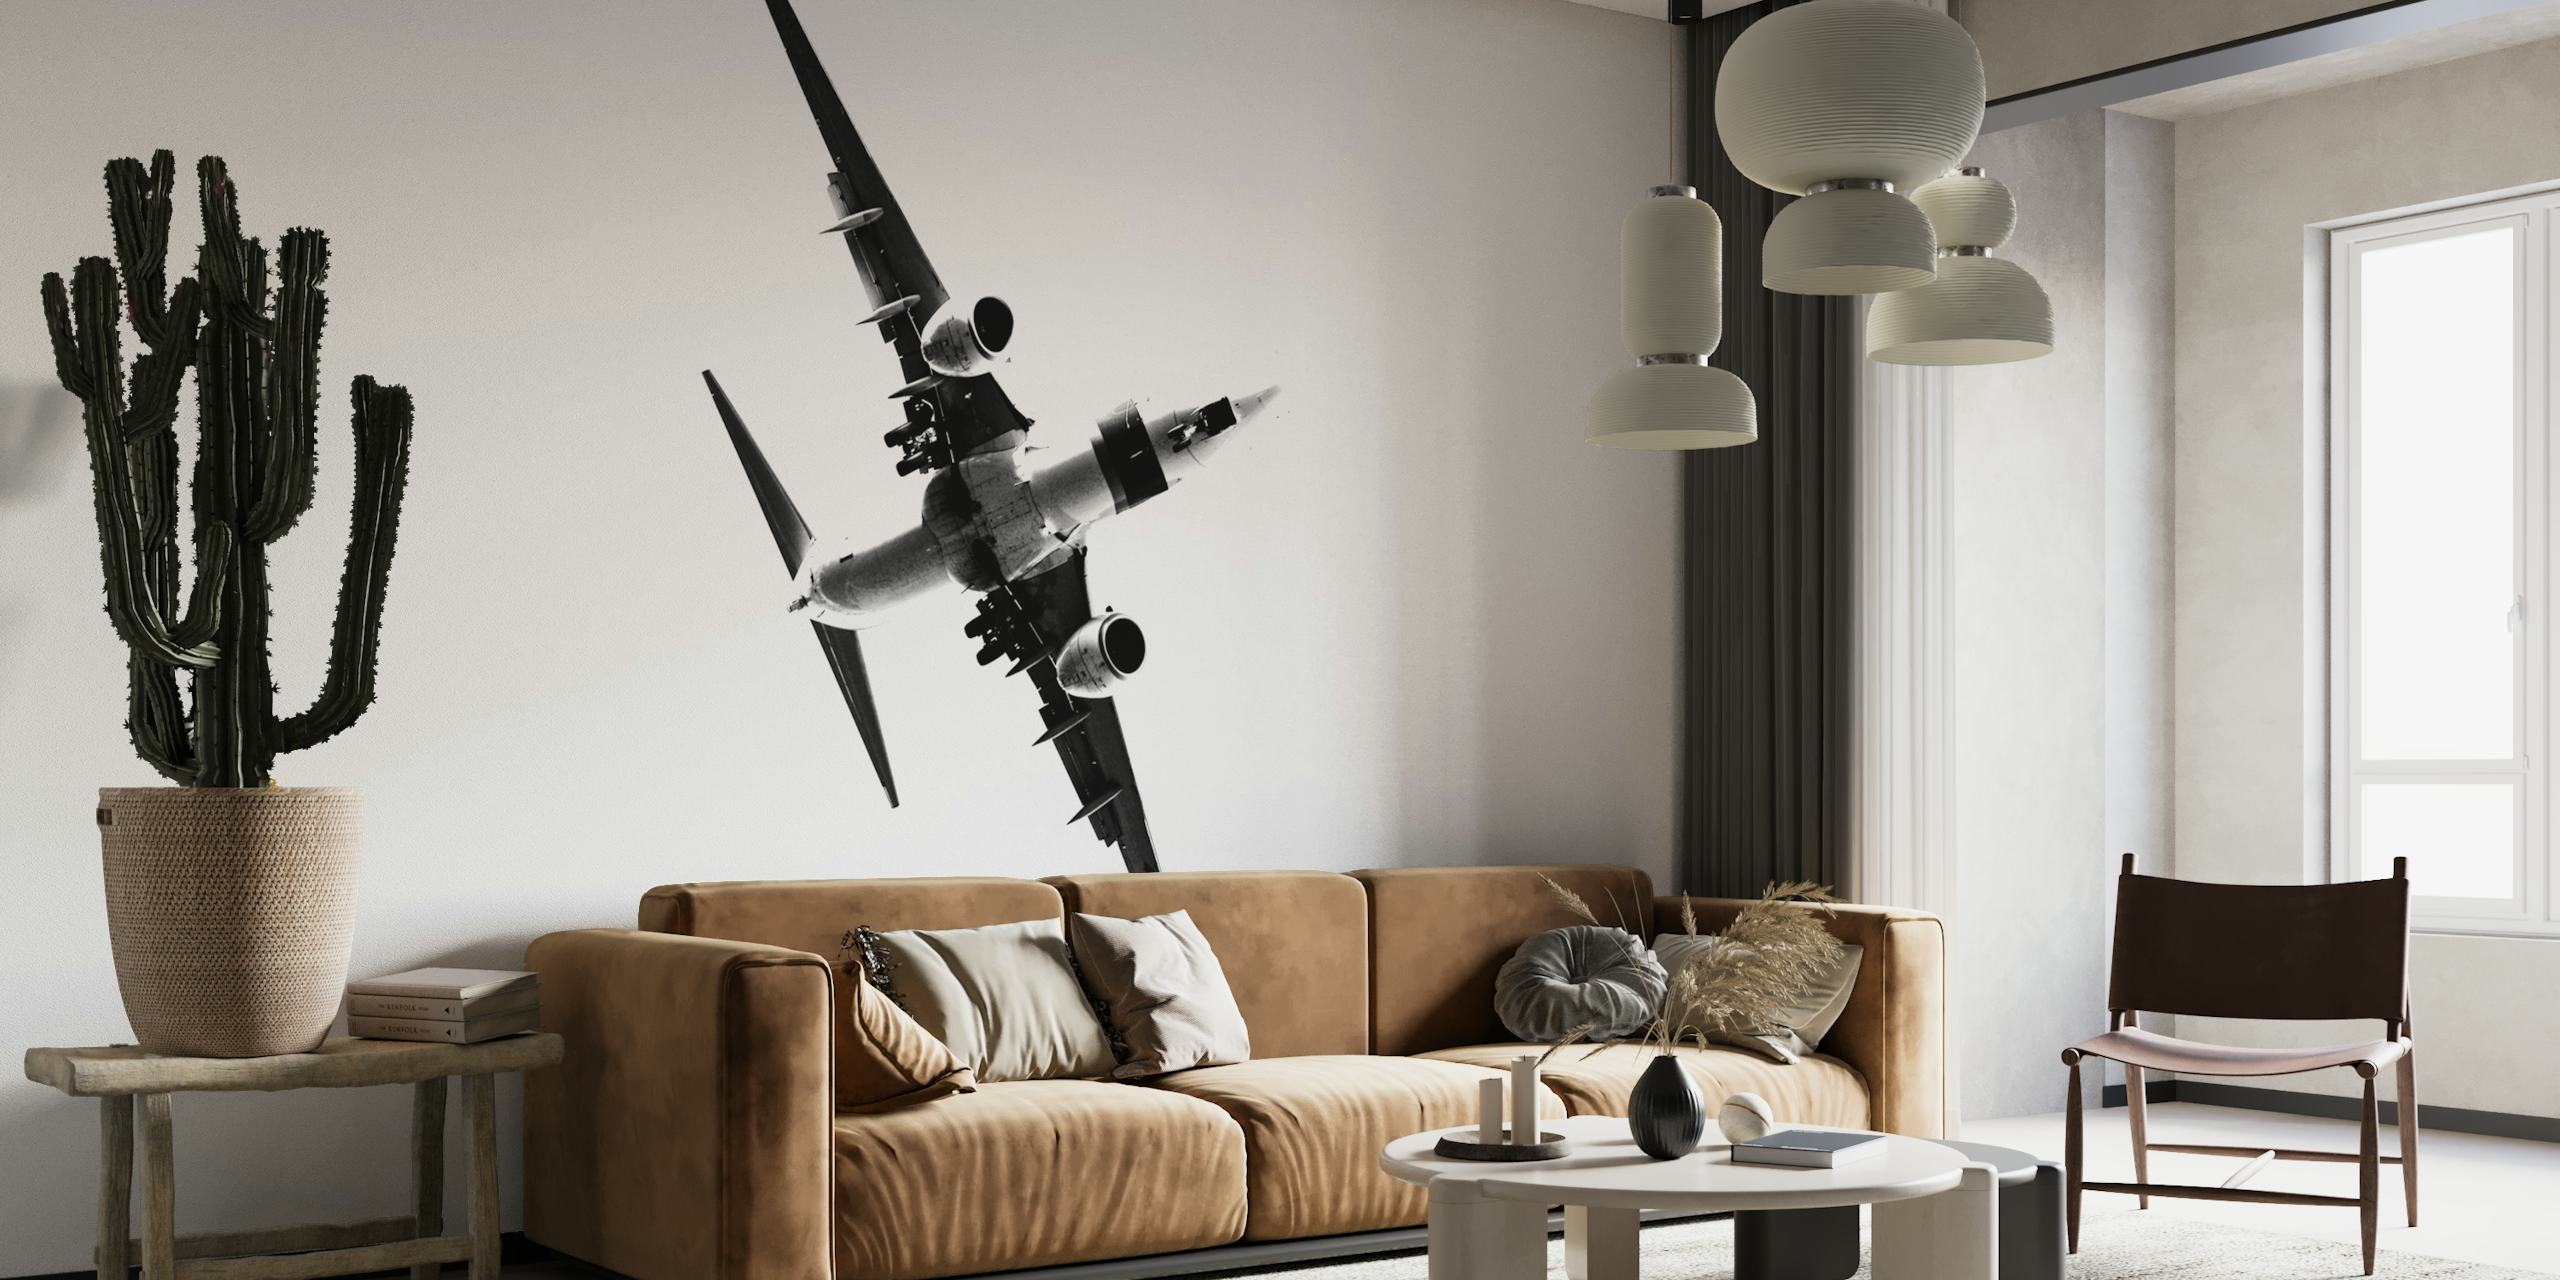 Sort/hvid vægmaleri af et stiliseret fly, der stiger op, symboliserer fremskridt og ambition